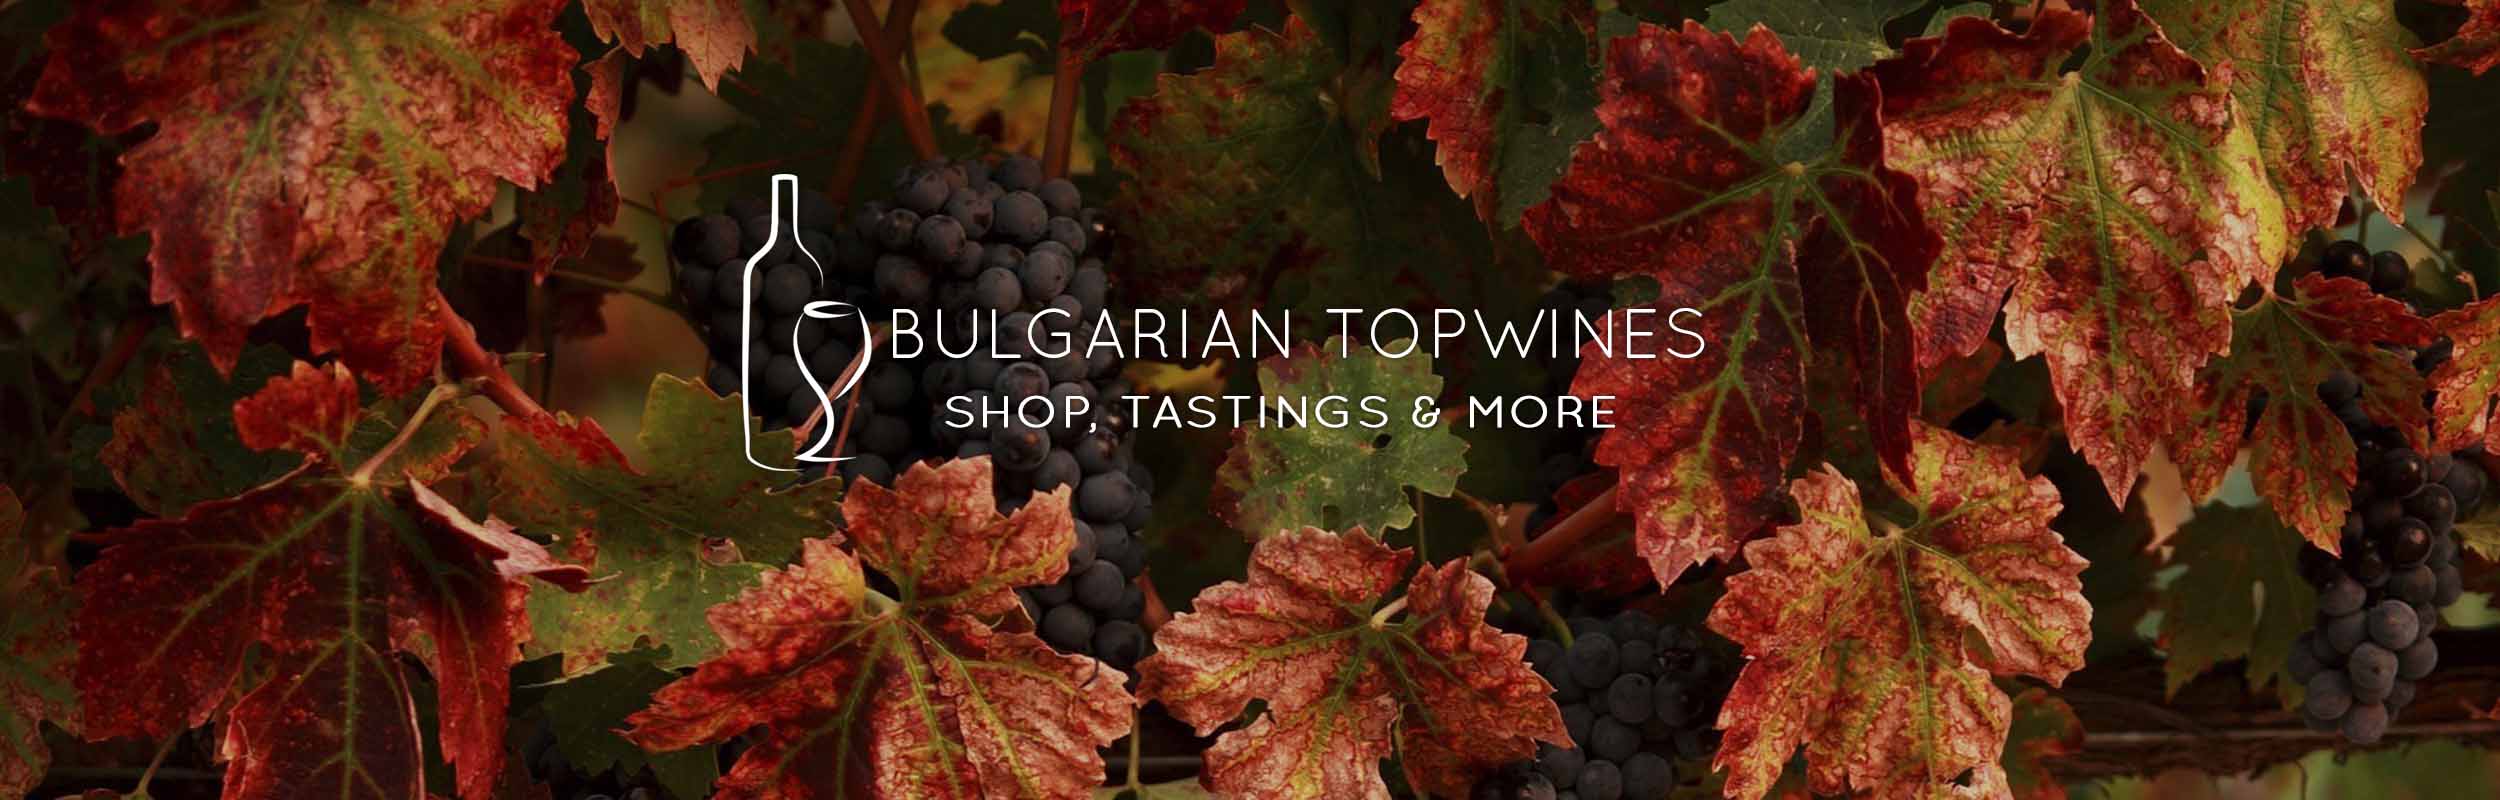 Bulgarian Topwines - Shop, tastings & more